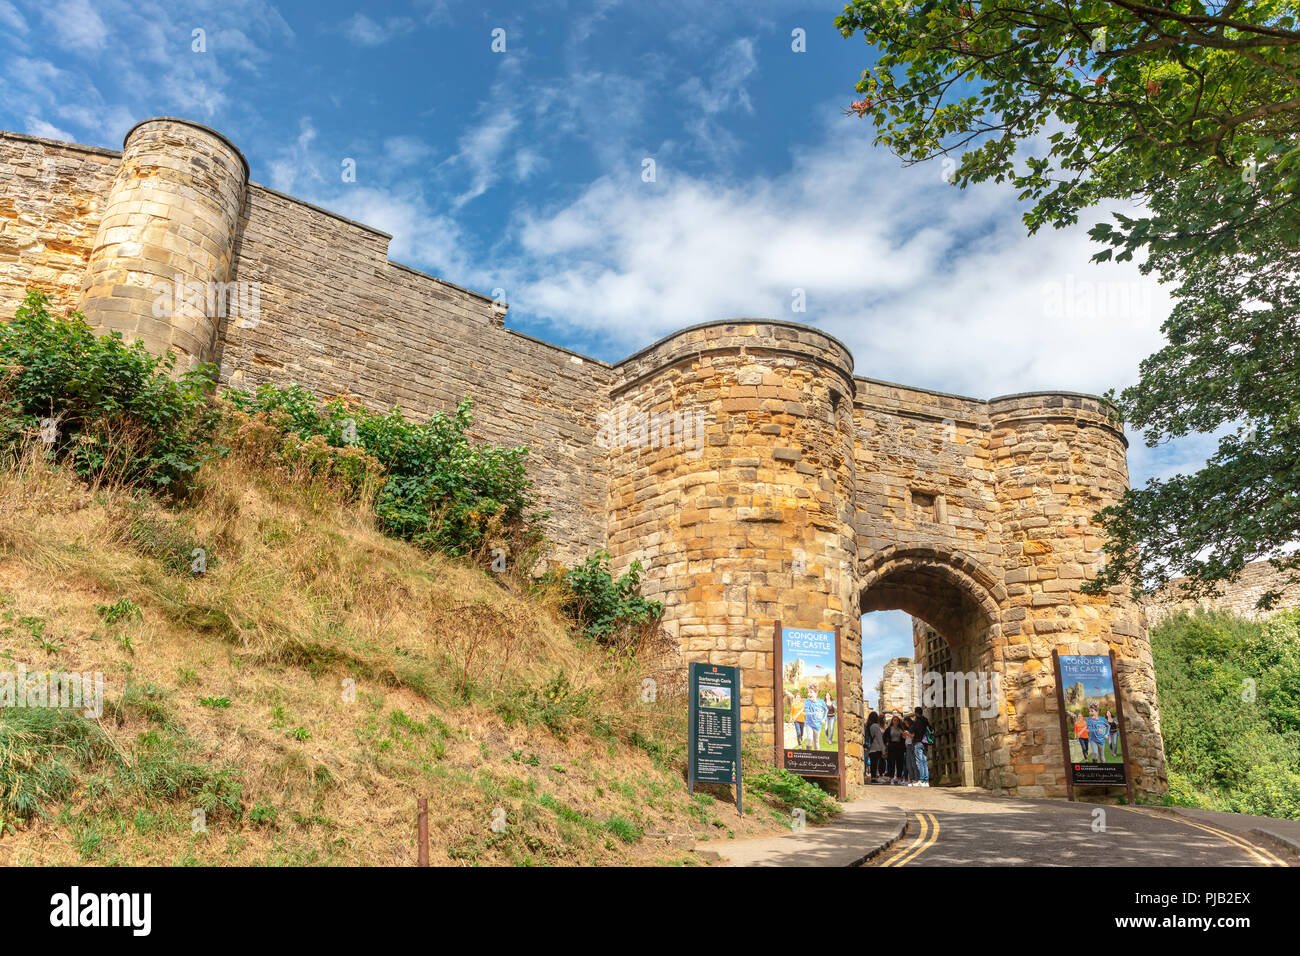 Ingresso ad arco nel castello medievale in Scarborough, una popolare attrazione turistica. Foto Stock